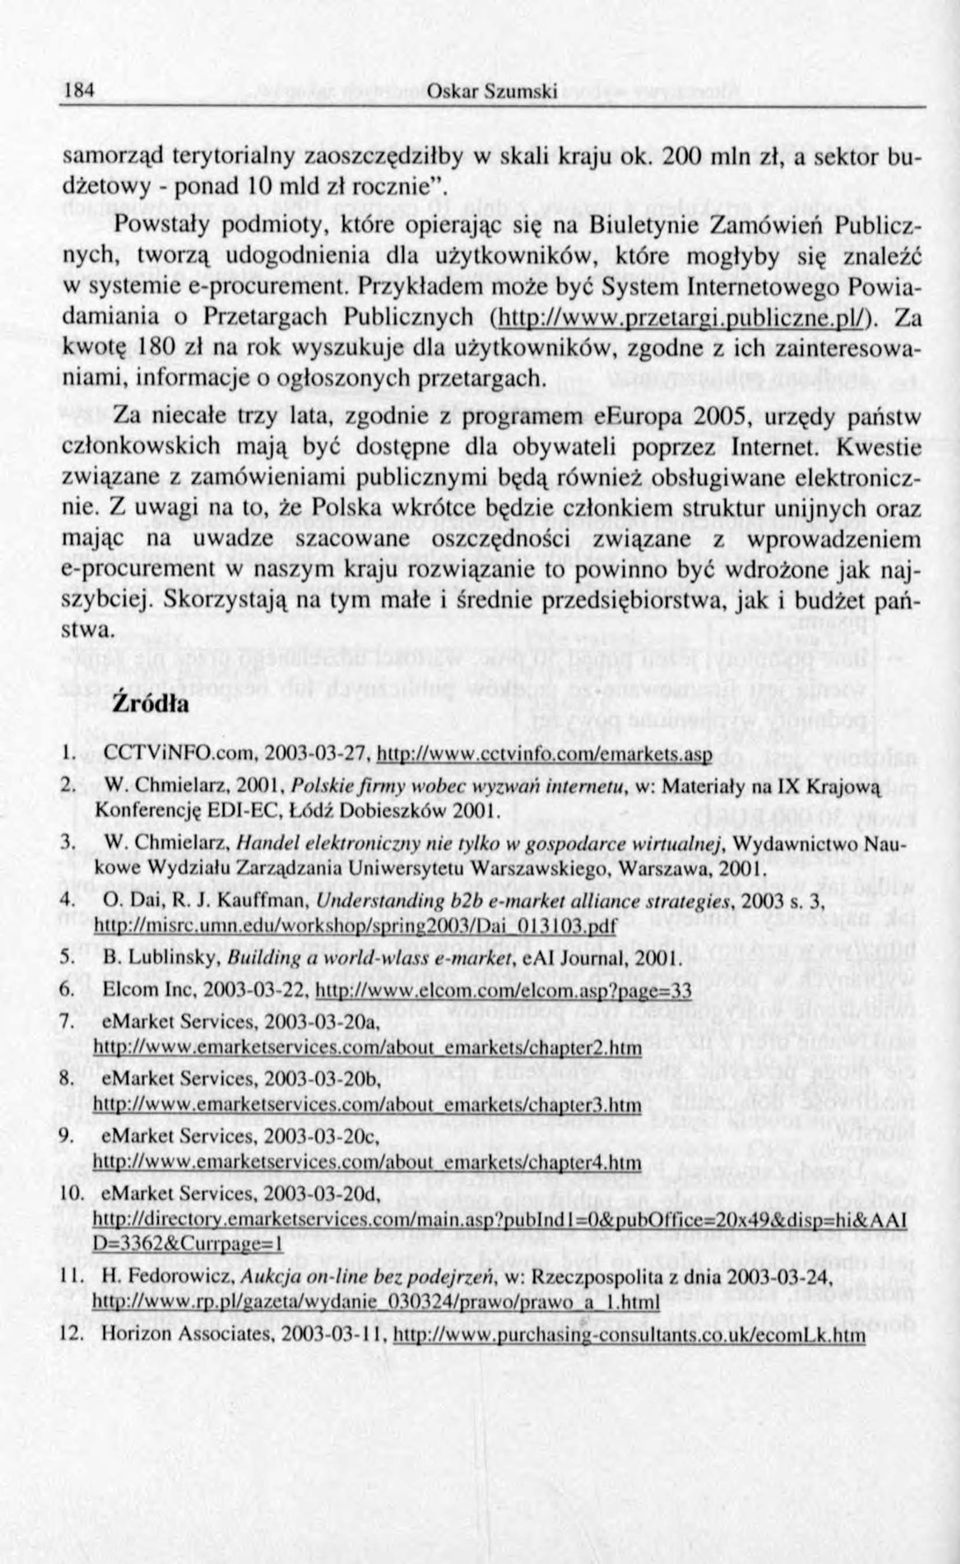 Przykładem może być System Internetowego Pow iadamiania o Przetargach Publicznych (http://www.przetargi.publiczne.pl/).